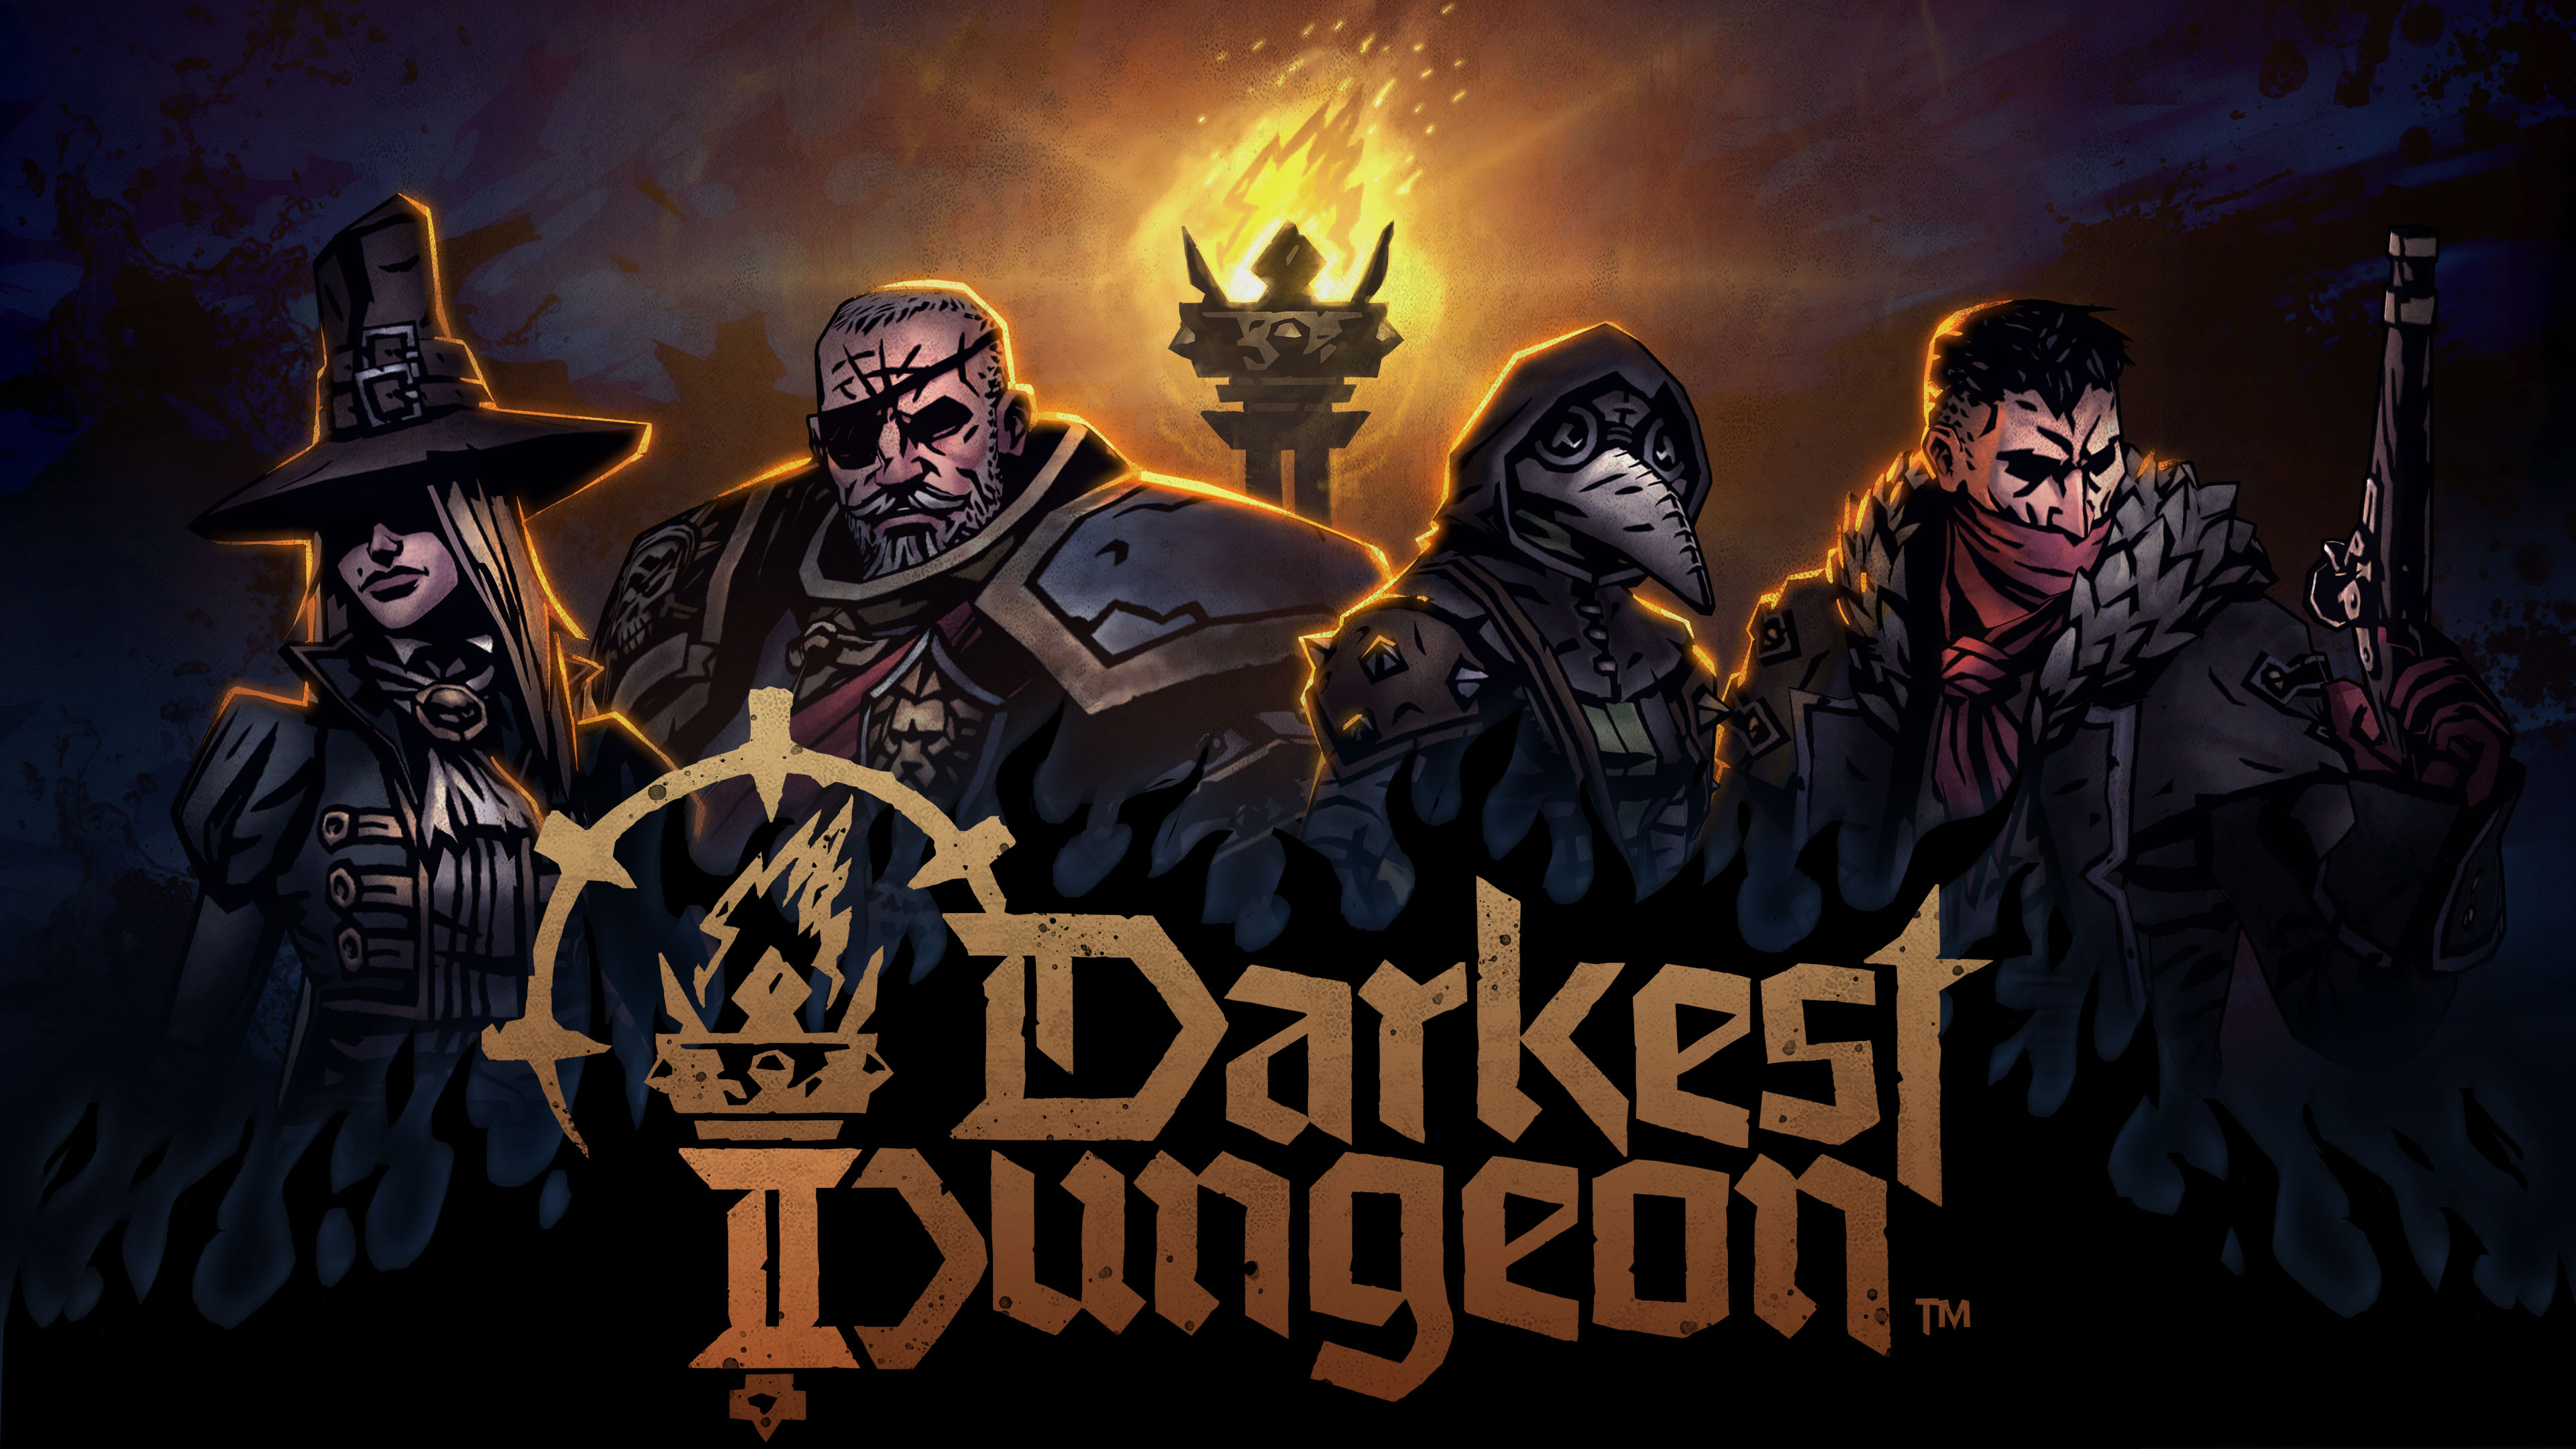 Darkest Dungeon 2 key art showing a party of adventurers.